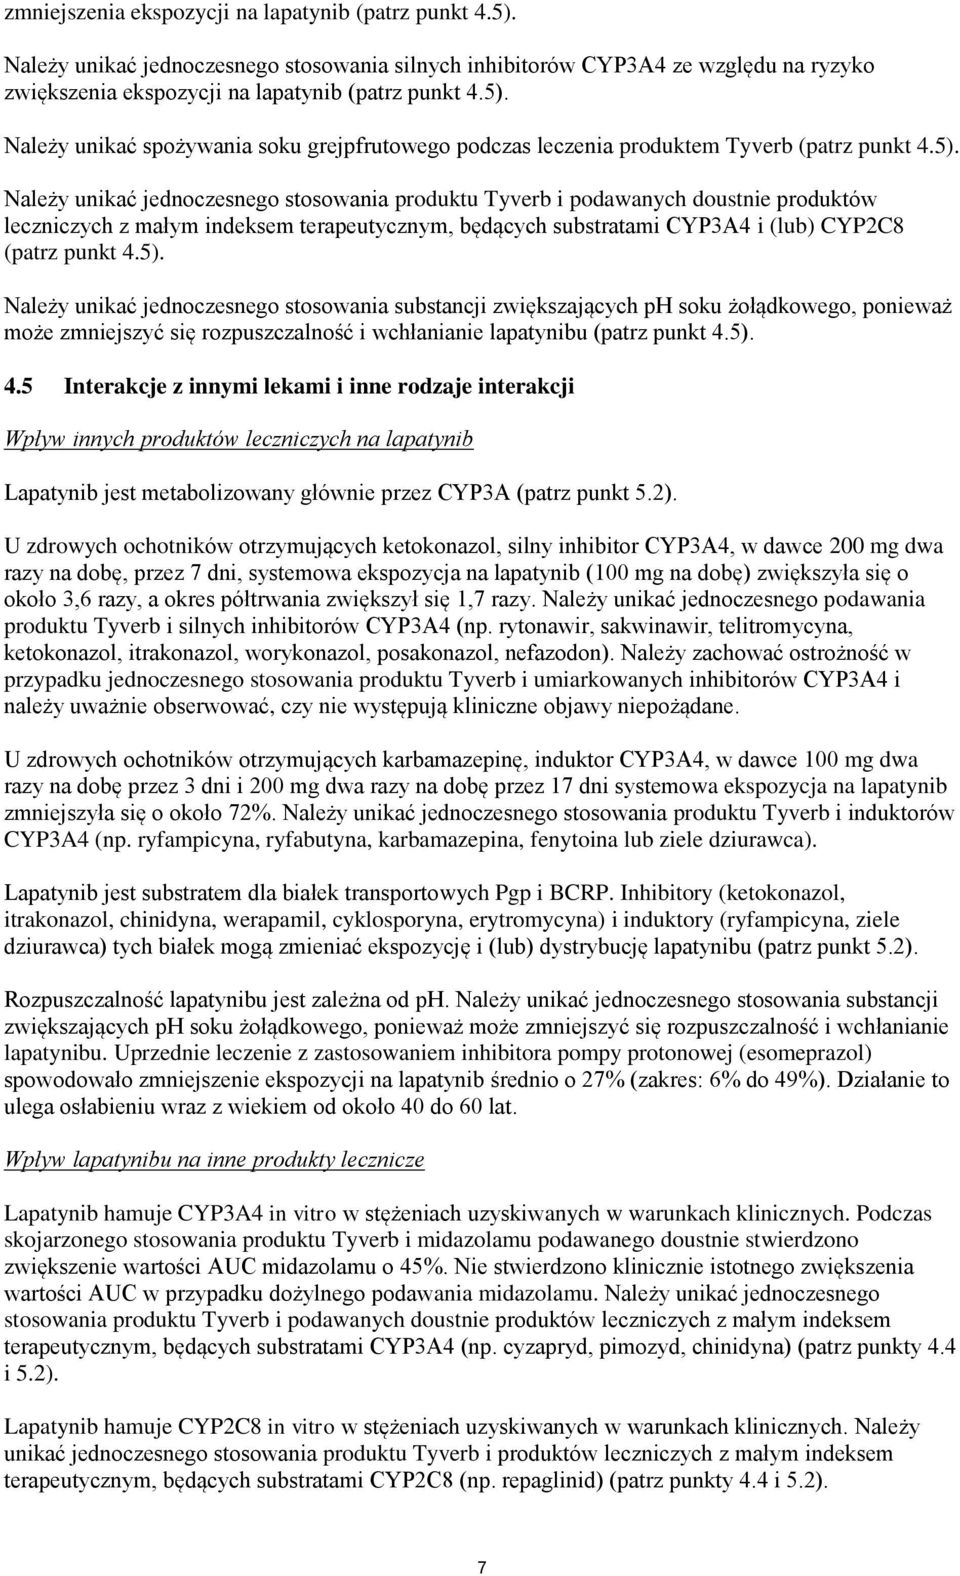 5). 4.5 Interakcje z innymi lekami i inne rodzaje interakcji Wpływ innych produktów leczniczych na lapatynib Lapatynib jest metabolizowany głównie przez CYP3A (patrz punkt 5.2).